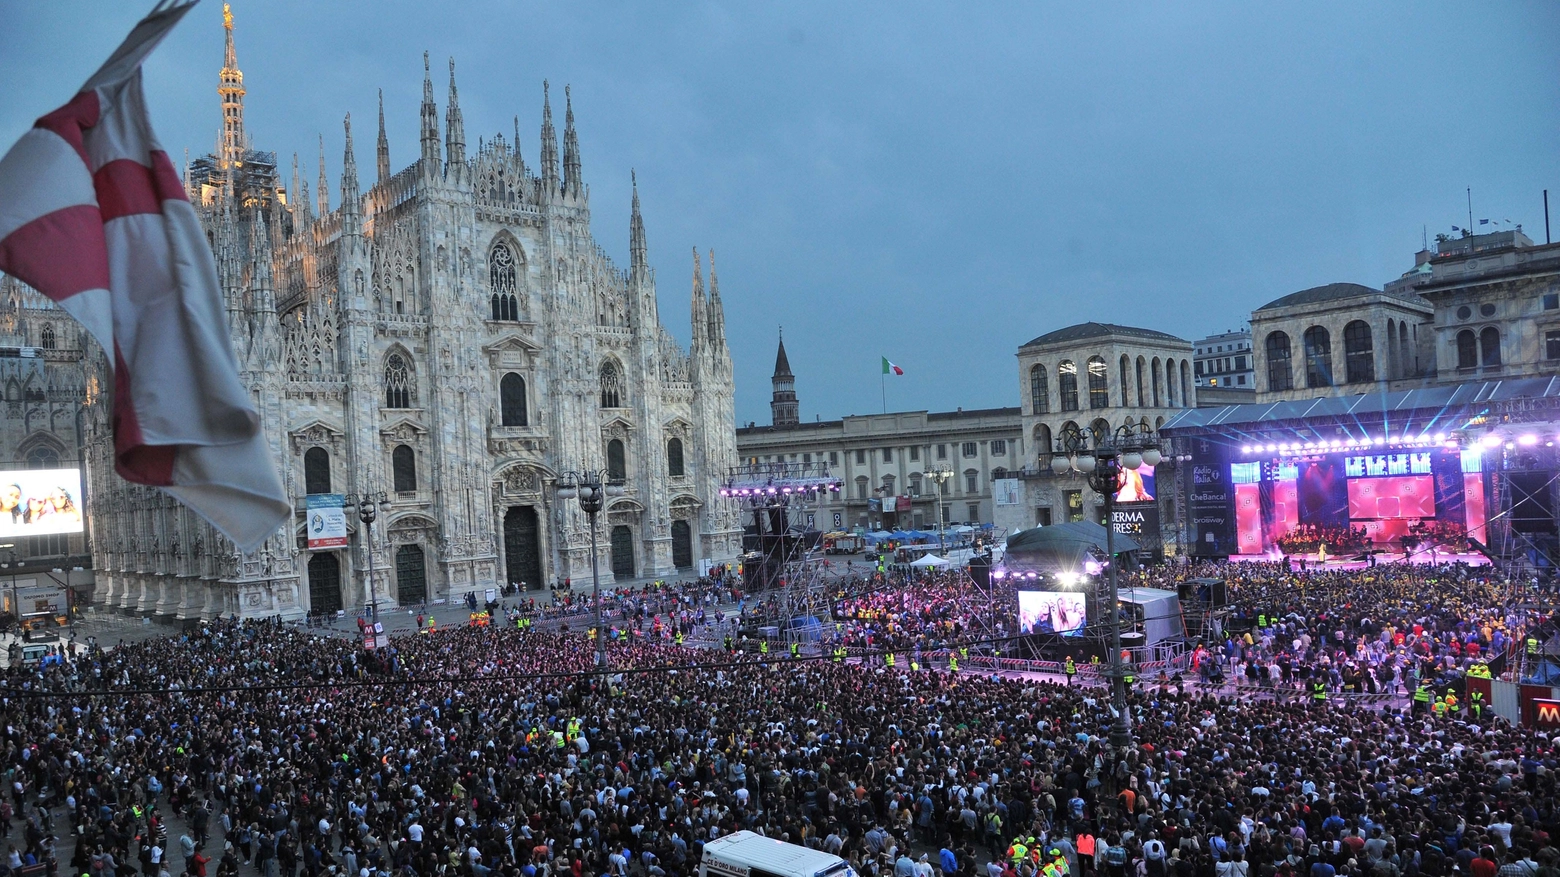 Il concerto dello scorso anno in piazza Duomo (Newpress)